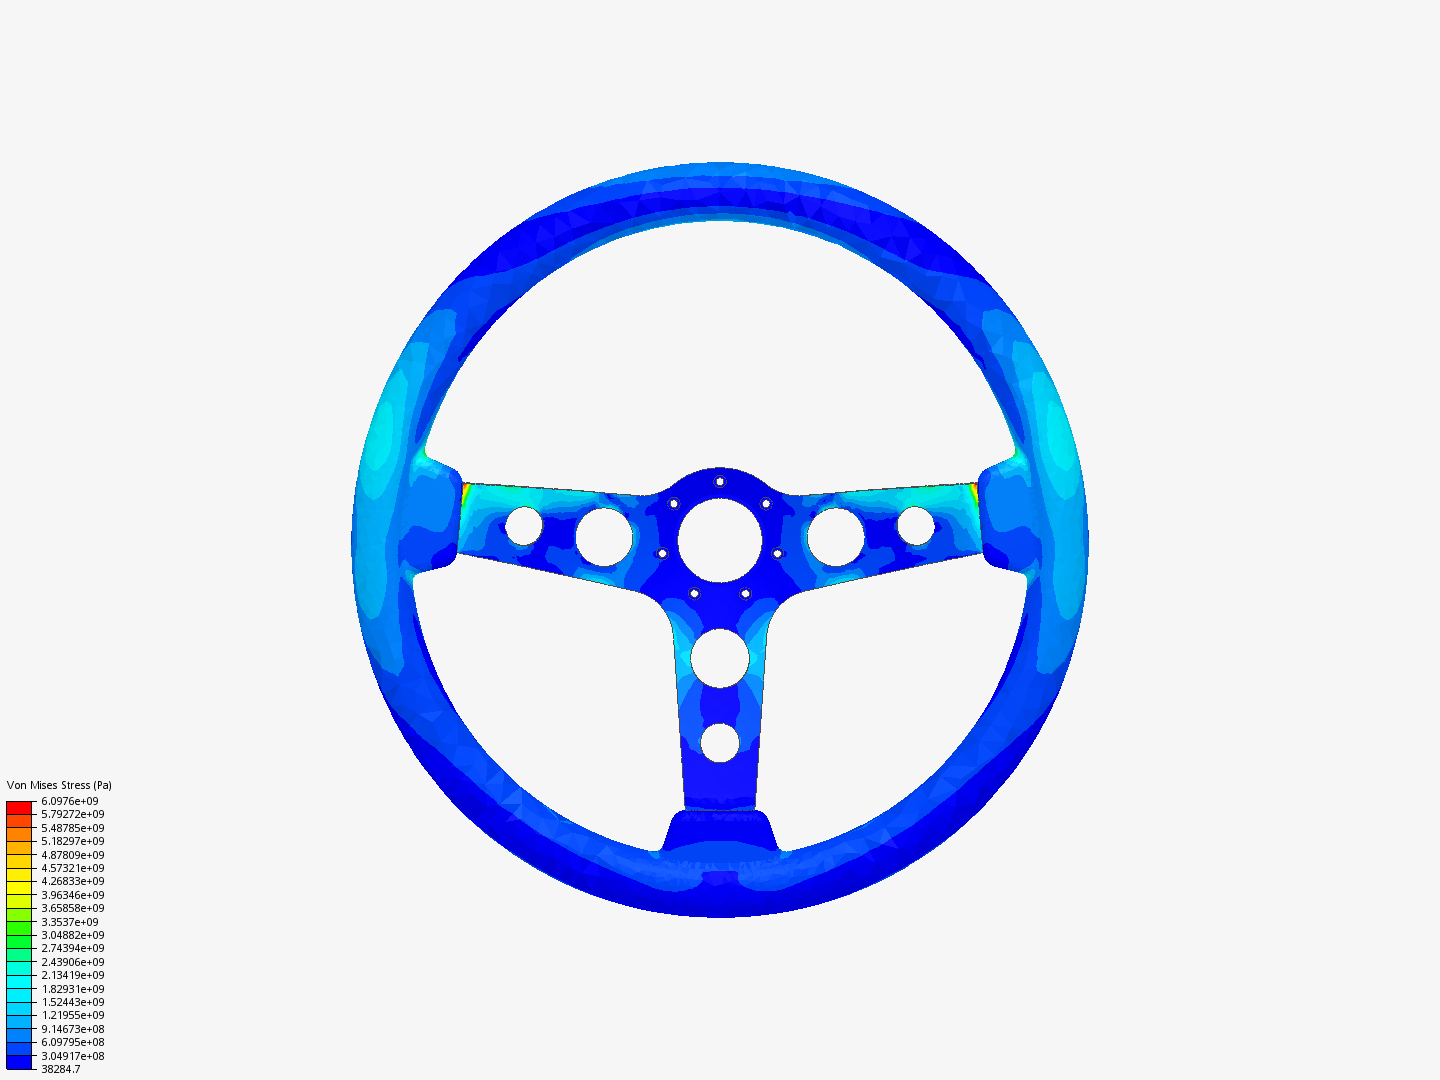 steering wheel image